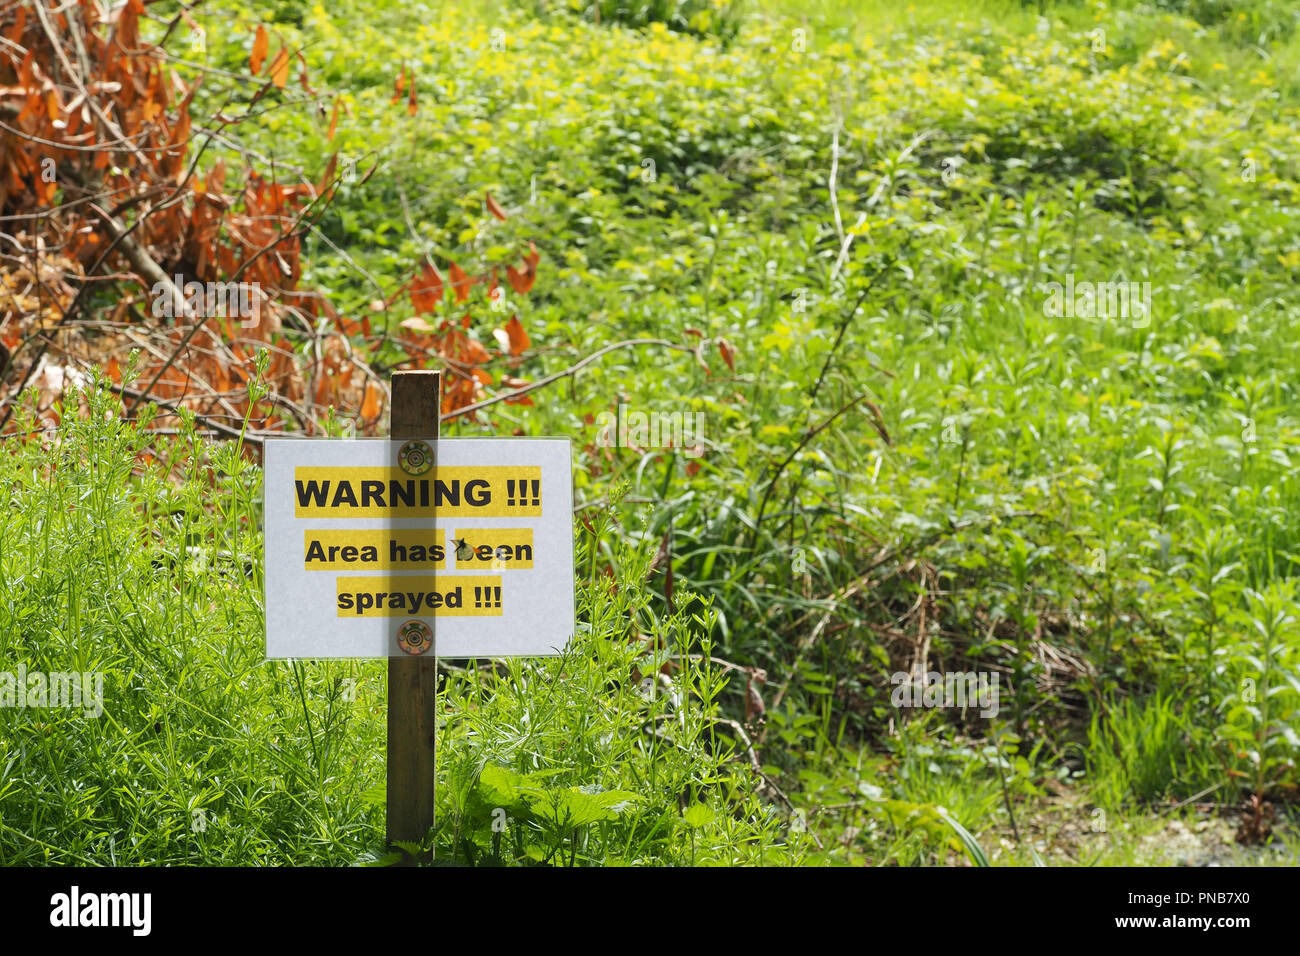 Warnschild neben Fluss Suir in Cahir, Co Tipperary, Irland Alarmierung Besucher, Pestizide oder herbecide auf die Vegetation besprüht wurde. Stockfoto